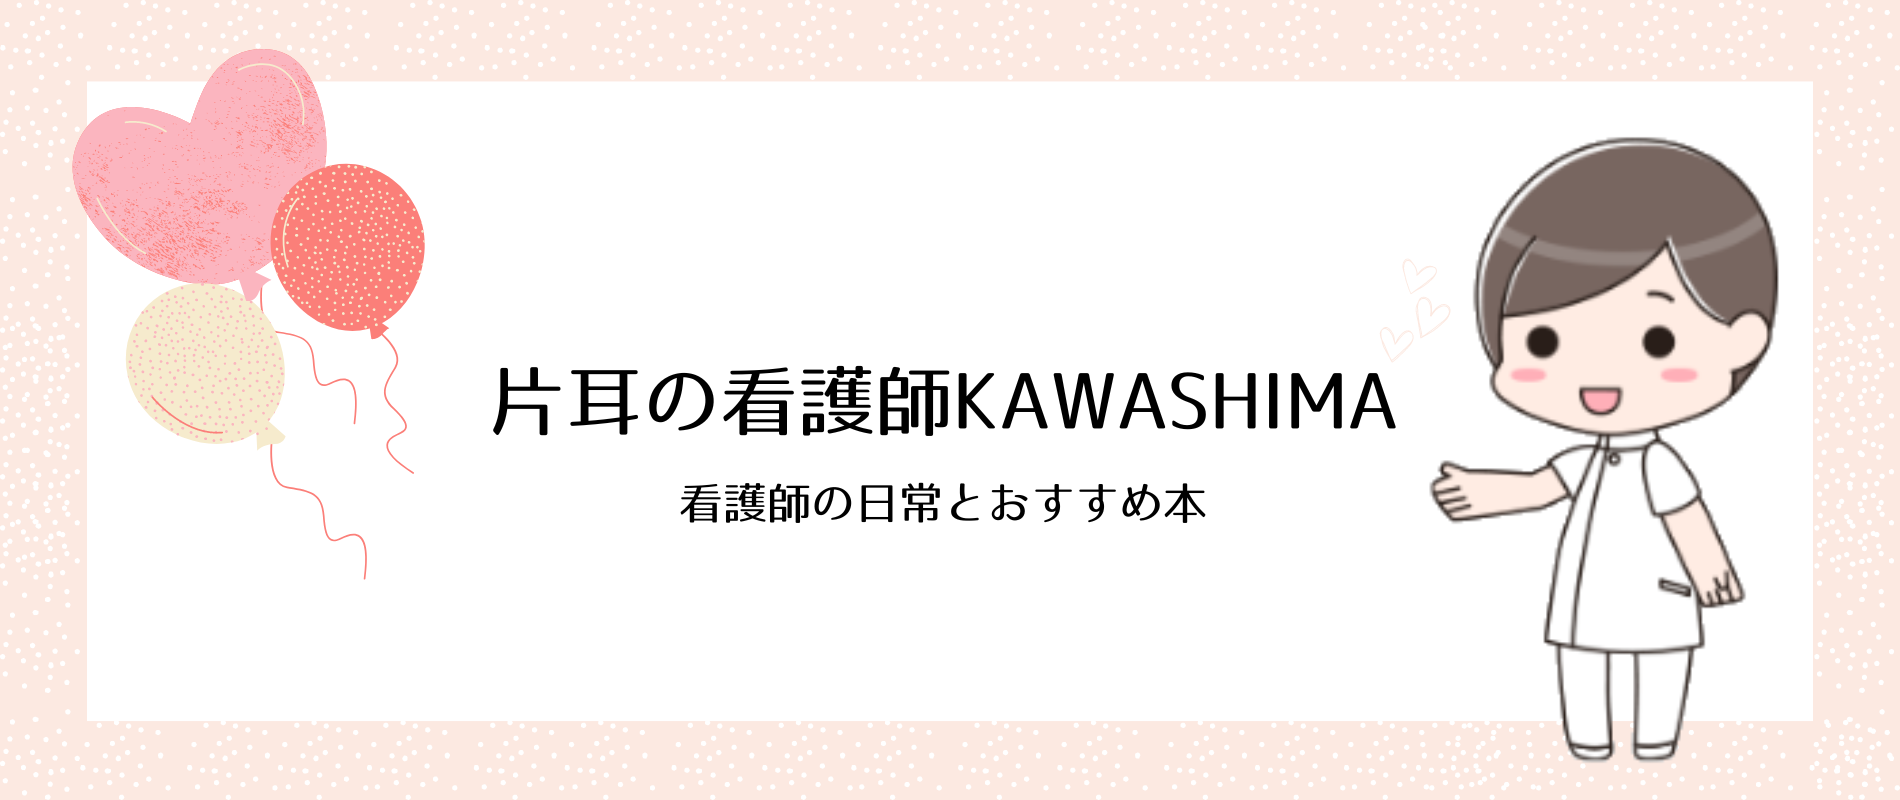 片耳の看護師KAWASHIMA